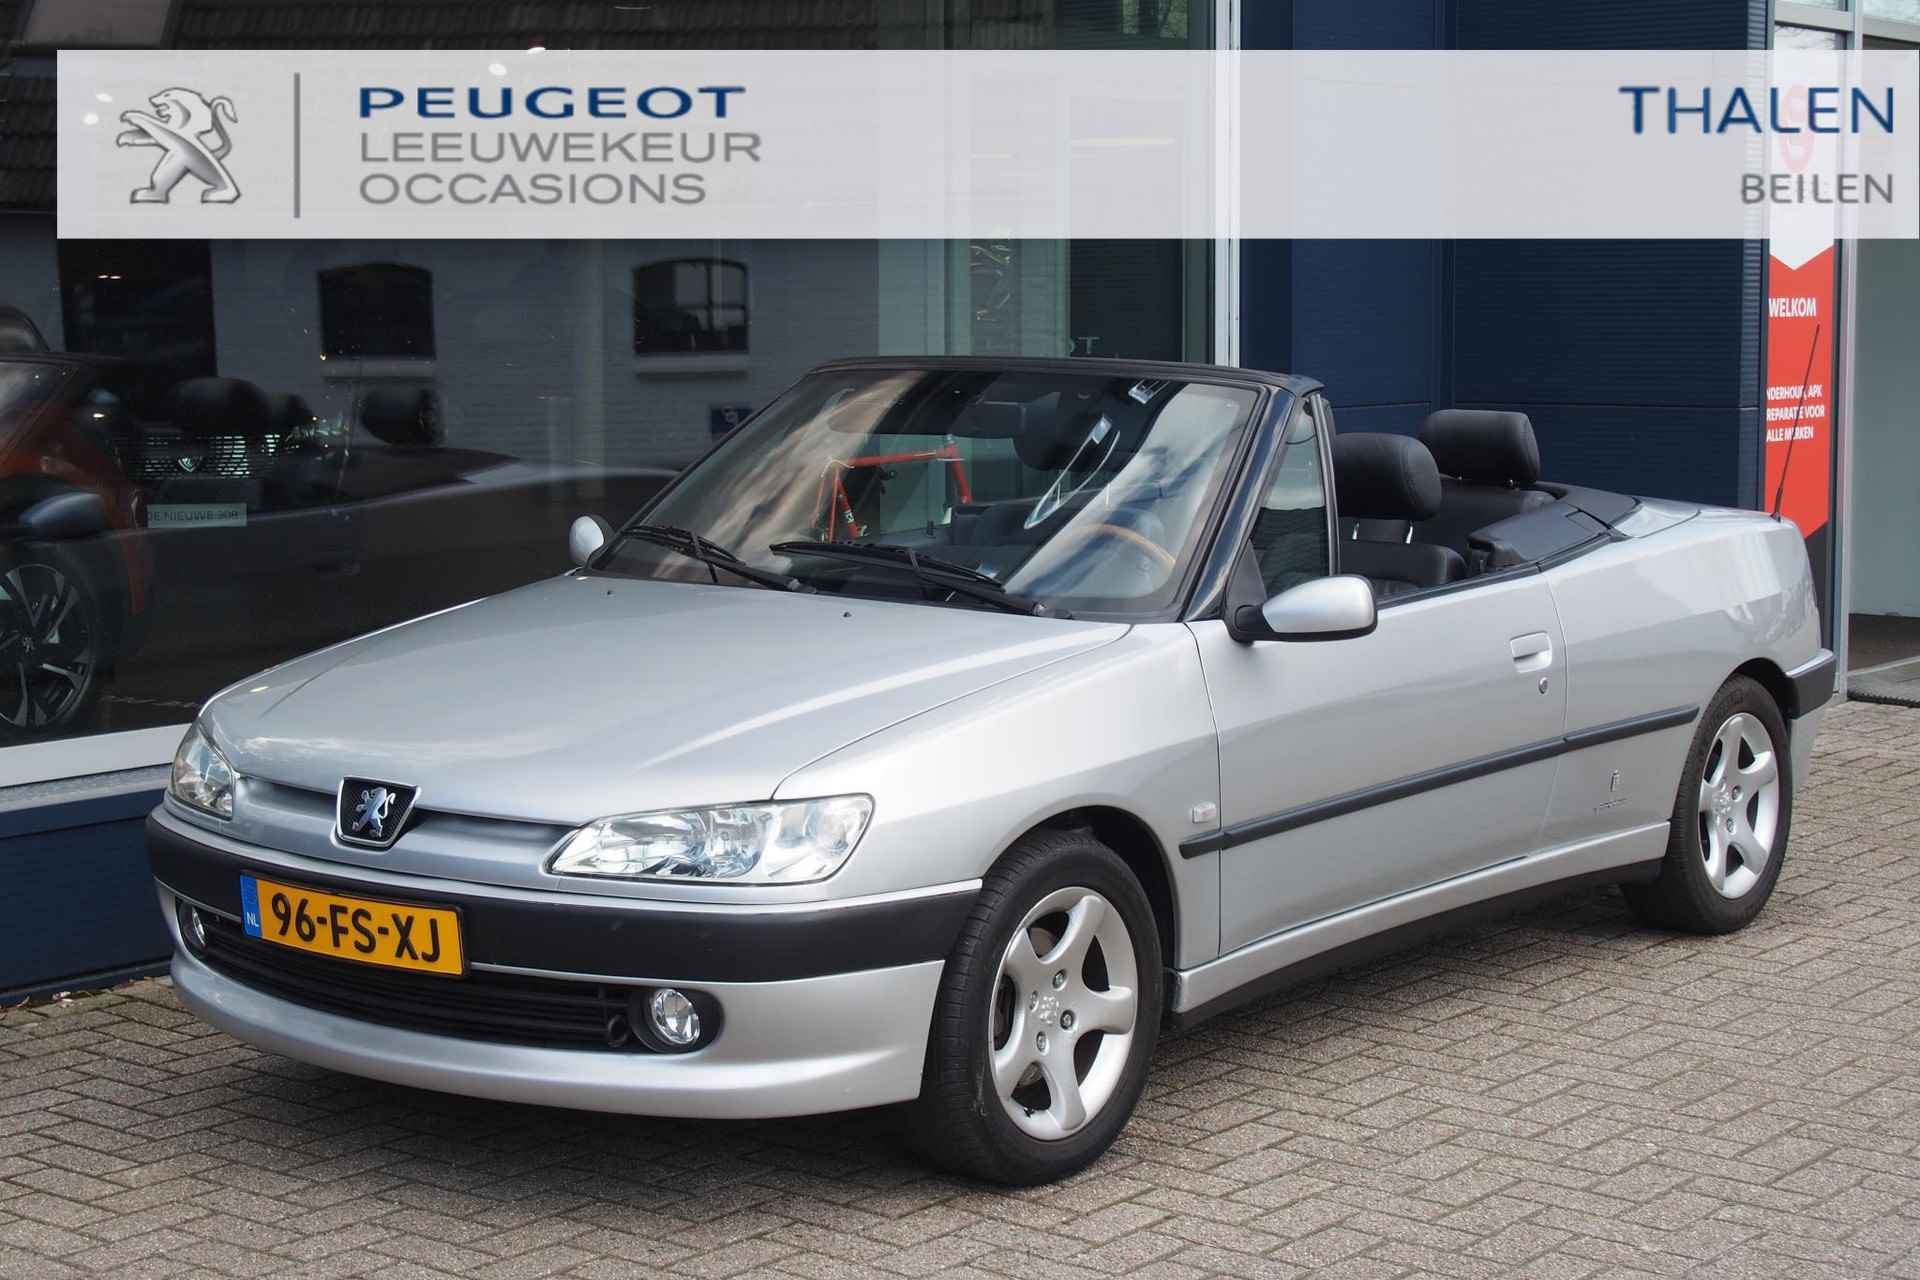 Peugeot 306 1.6 CABRIOLET AUT UIT PRIVECOLLECTIE! KEURIGE 306 CABRIO AUTOMAAT VAN 1E EIGENAAR MET SLECHTS 71.000 KM! - 1/27